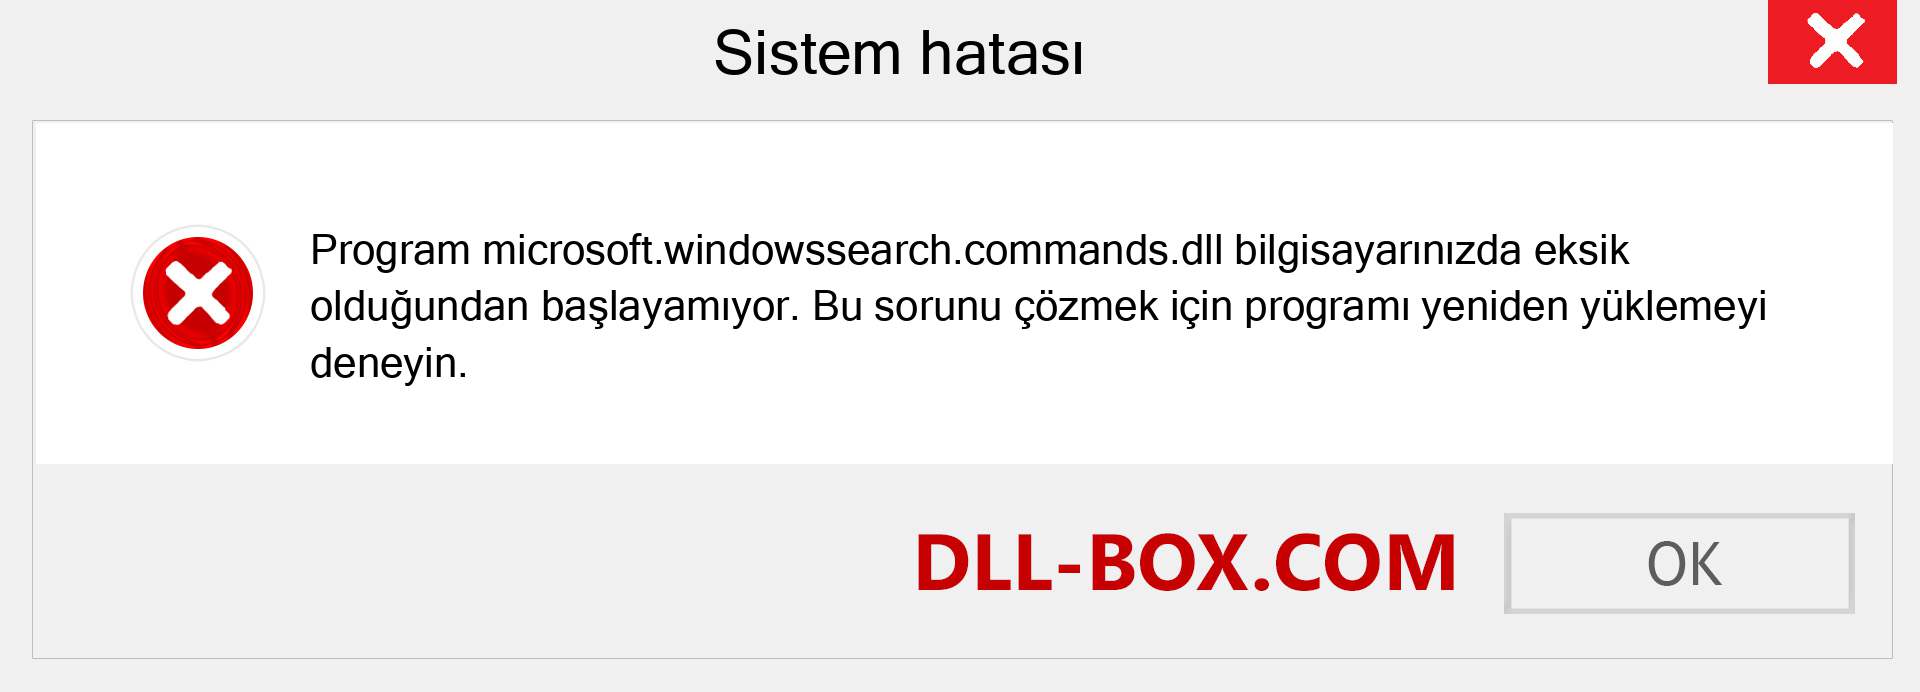 microsoft.windowssearch.commands.dll dosyası eksik mi? Windows 7, 8, 10 için İndirin - Windows'ta microsoft.windowssearch.commands dll Eksik Hatasını Düzeltin, fotoğraflar, resimler